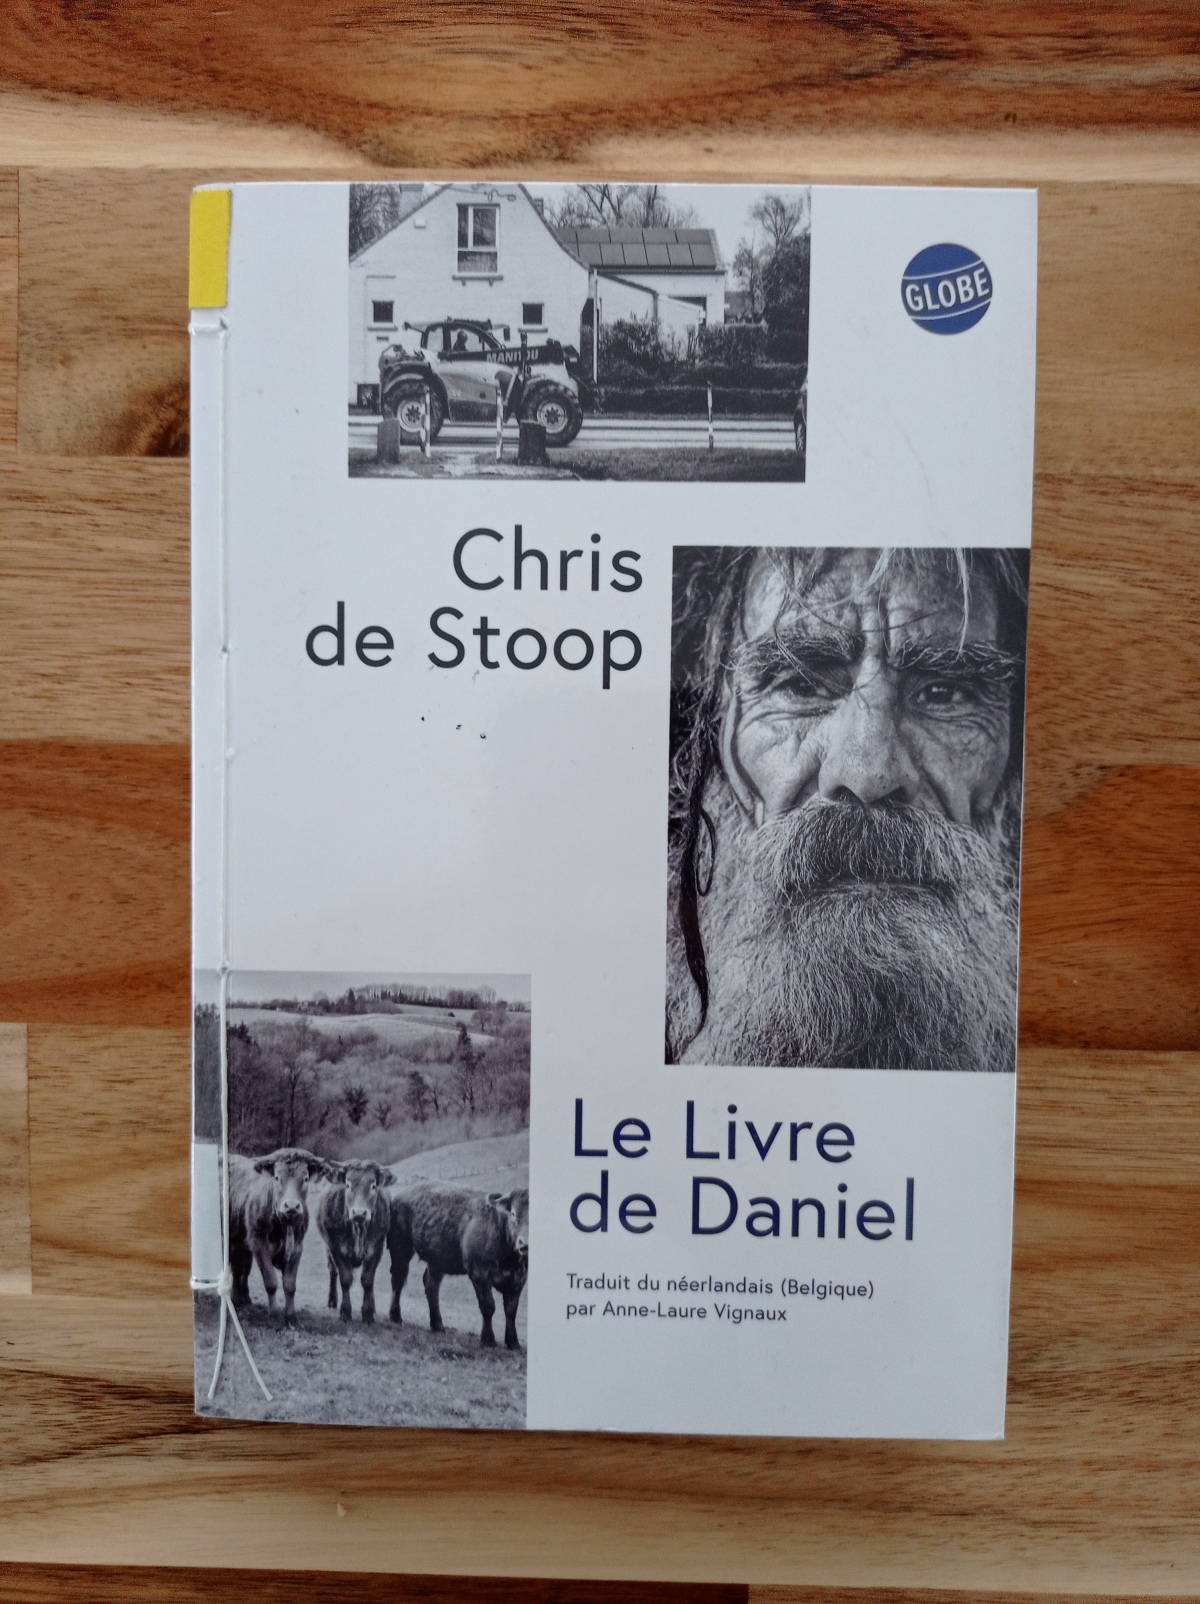 Le livre de Daniel / Chris de Stoop